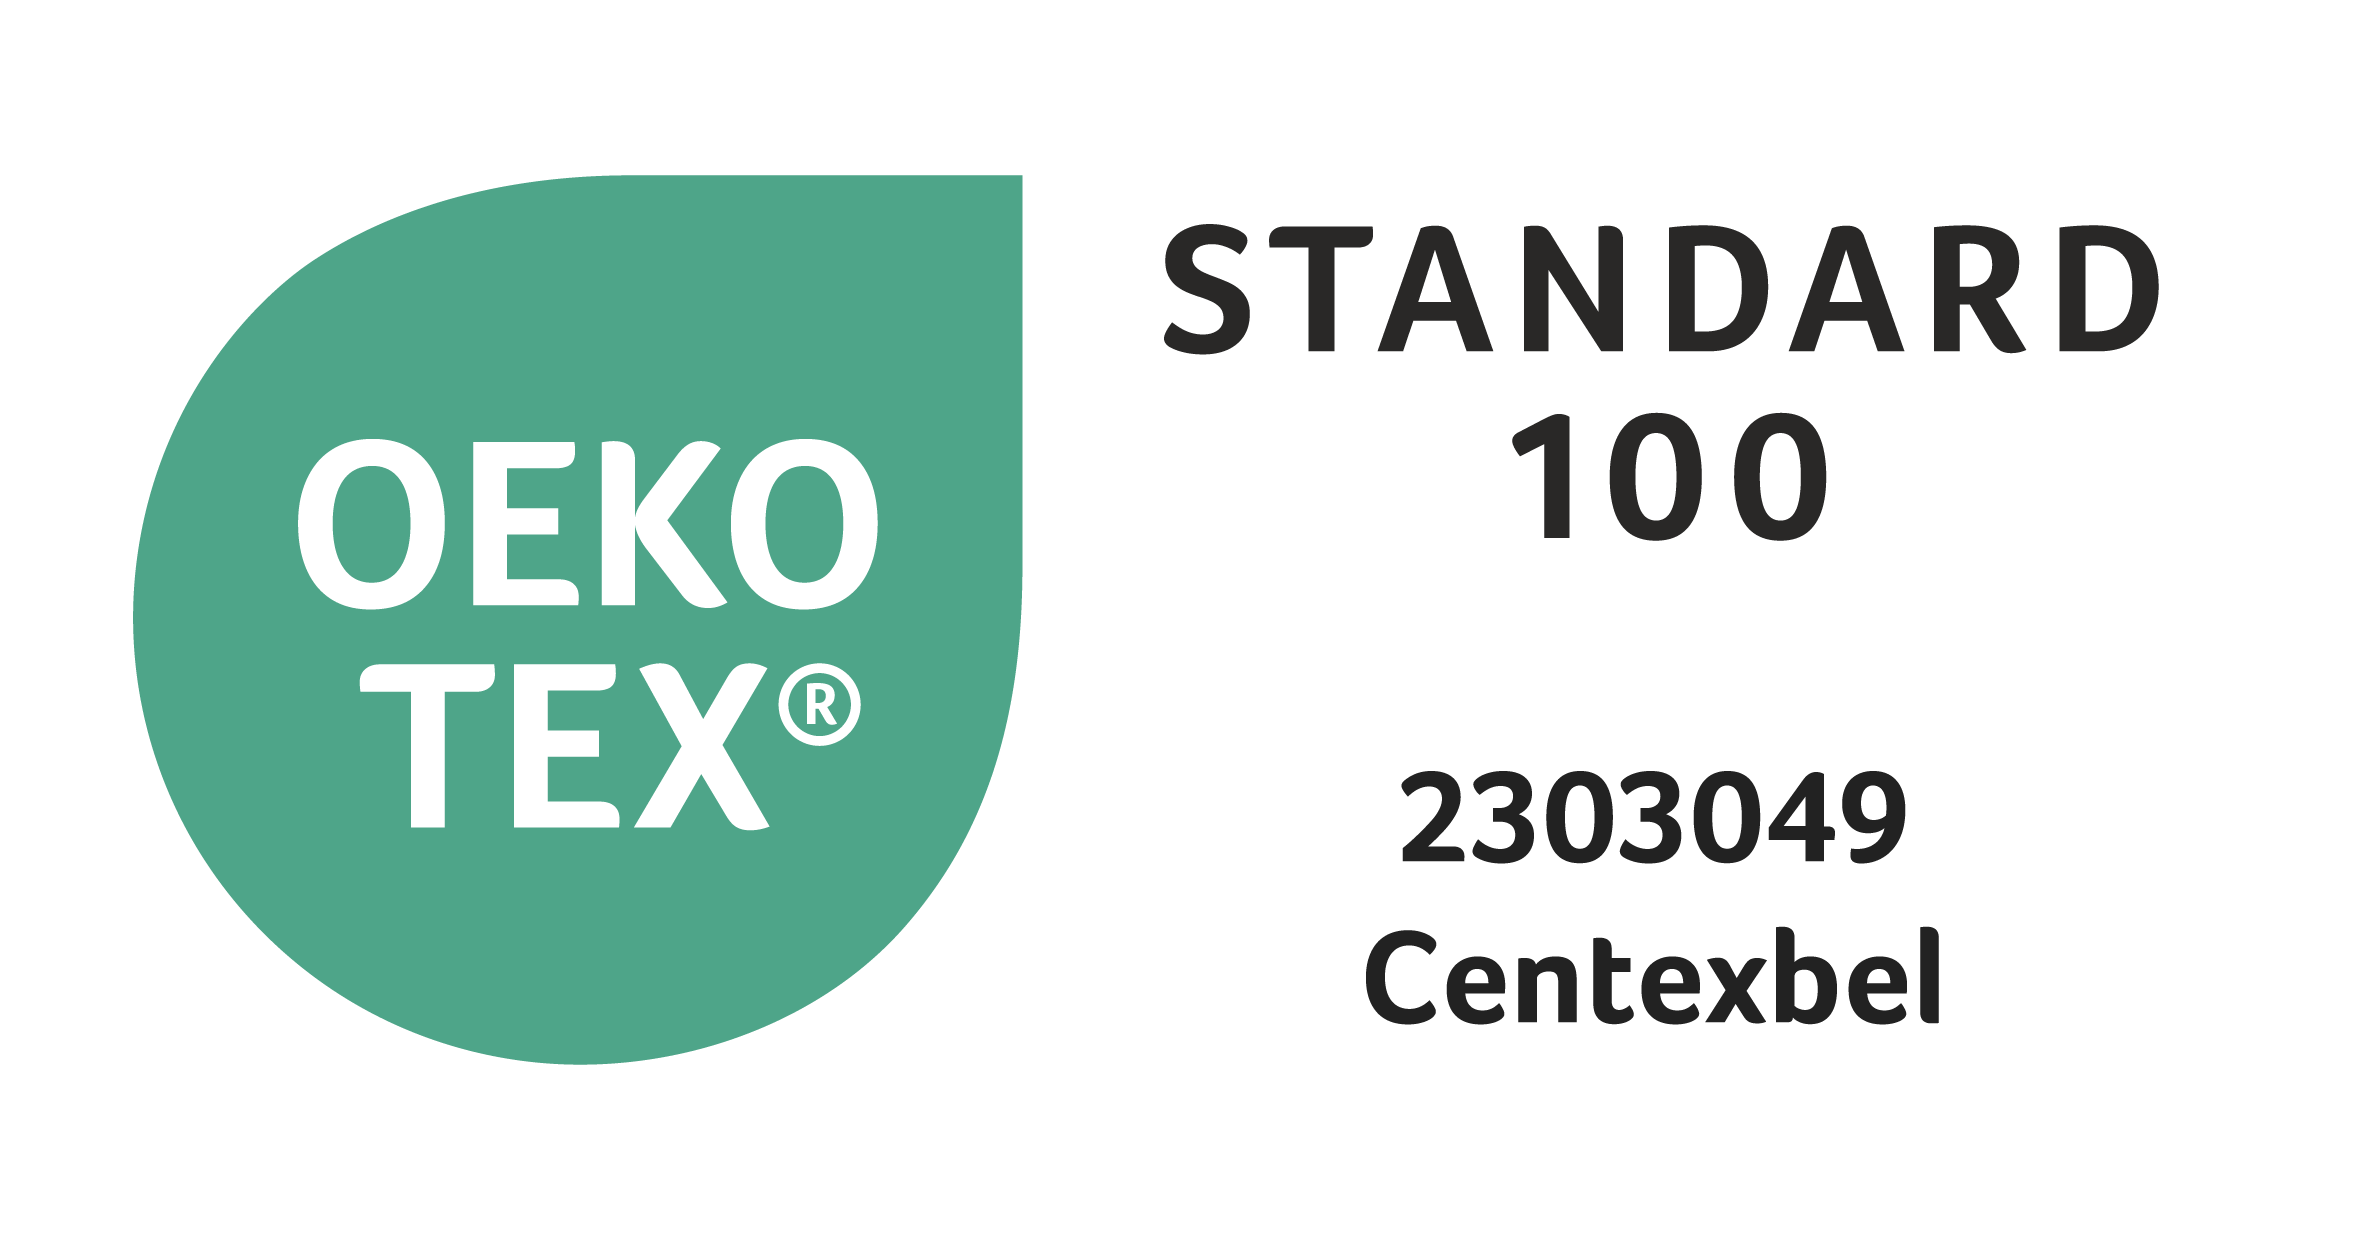 Getest op schadelijke stoffen volgens Oeko-Tex® Standard 100 (2303049/Centexbel)